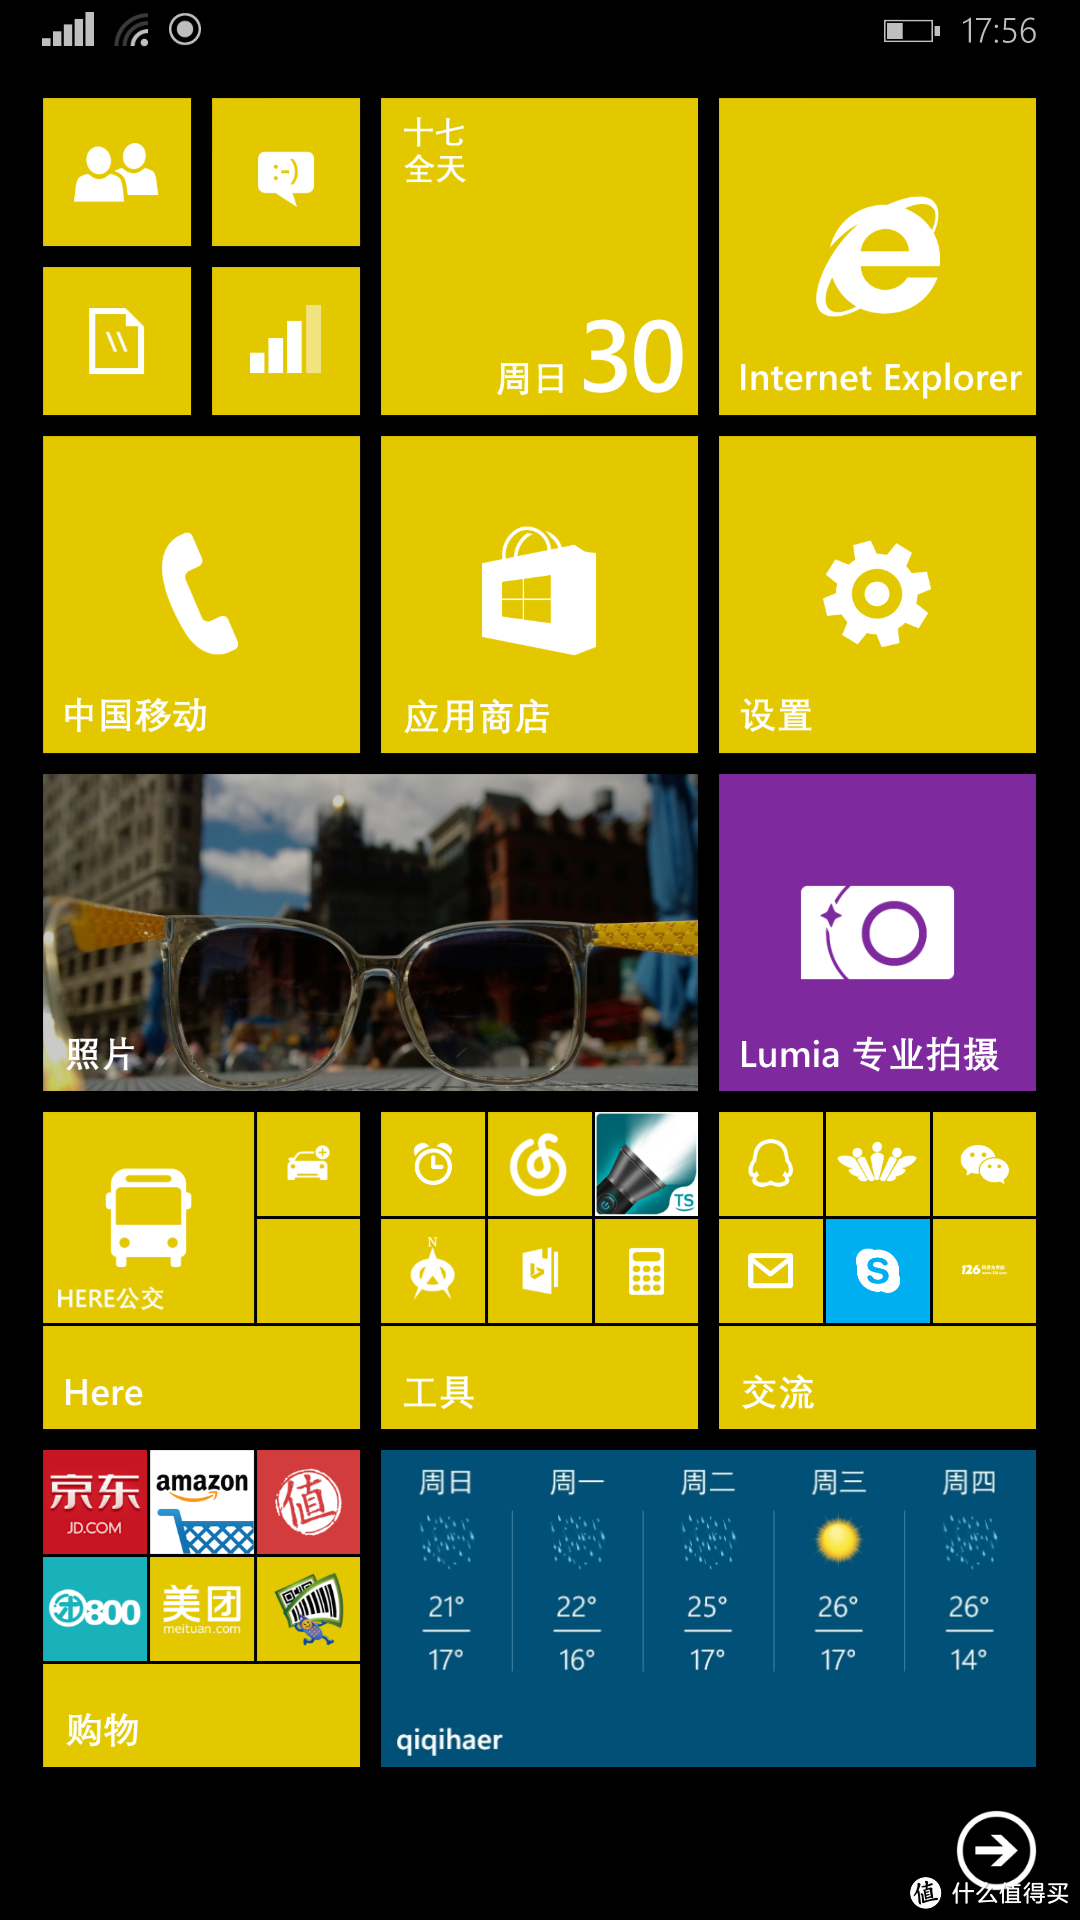 大有可言 NOKIA 诺基亚 Lumia 1520及Windows Phone系统使用一年小记